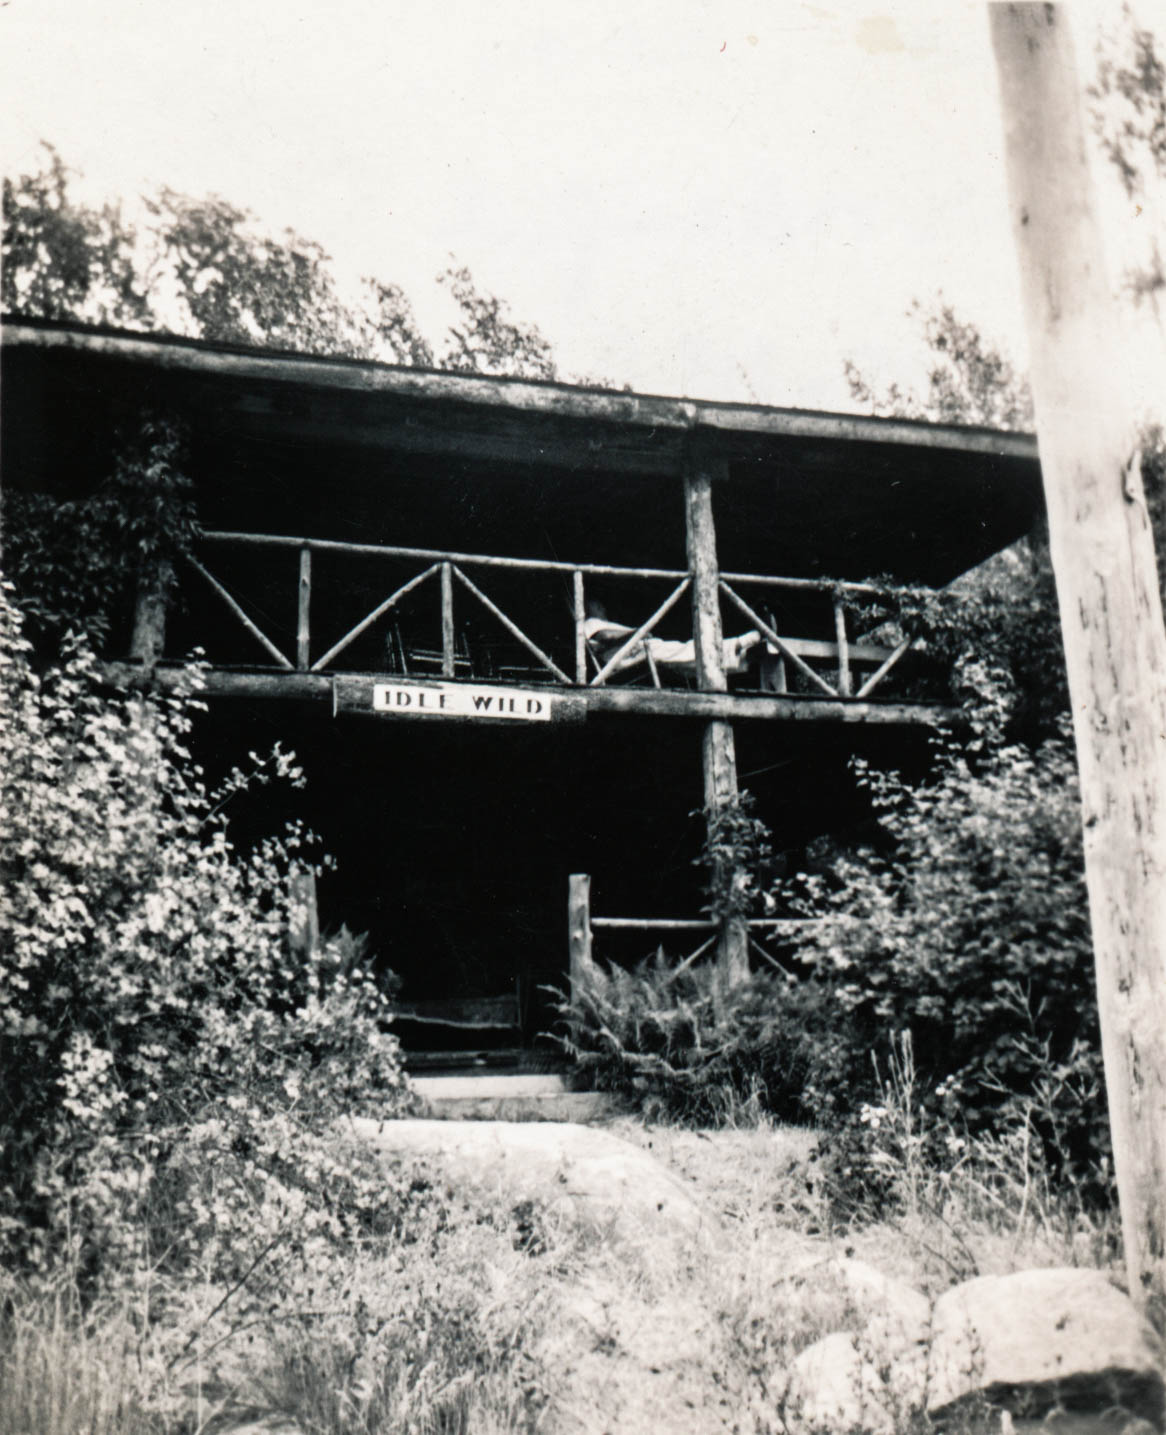 Idlewild Lodge - idlewildlodge.github.io - Circa 1920 - Idlewild Lodge Facade With The Idle Wild Sign